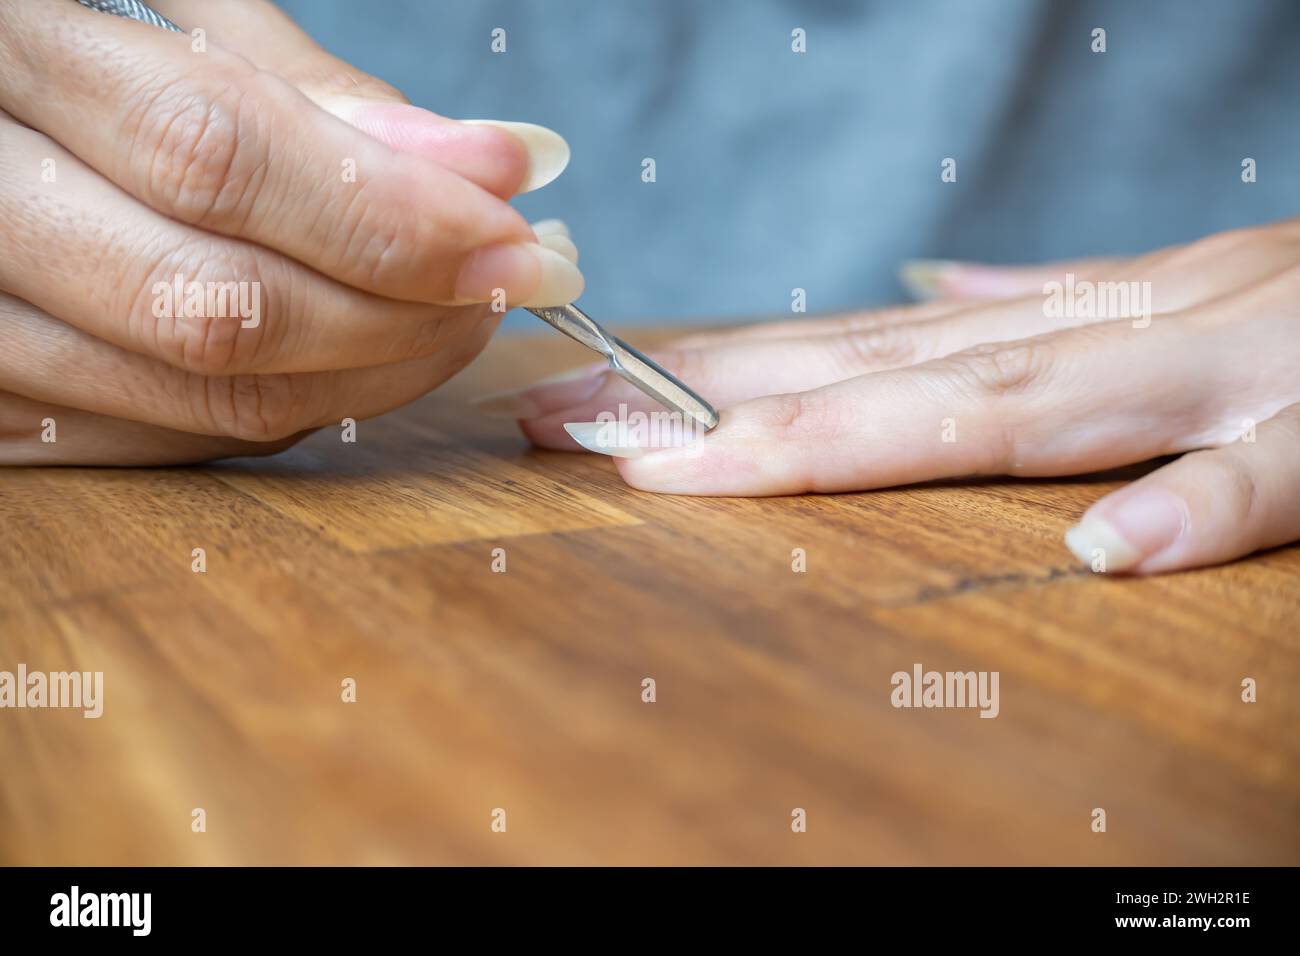 Le dita della donna utilizzano un pestello per cuticole a forma di pagaia. Foto Stock